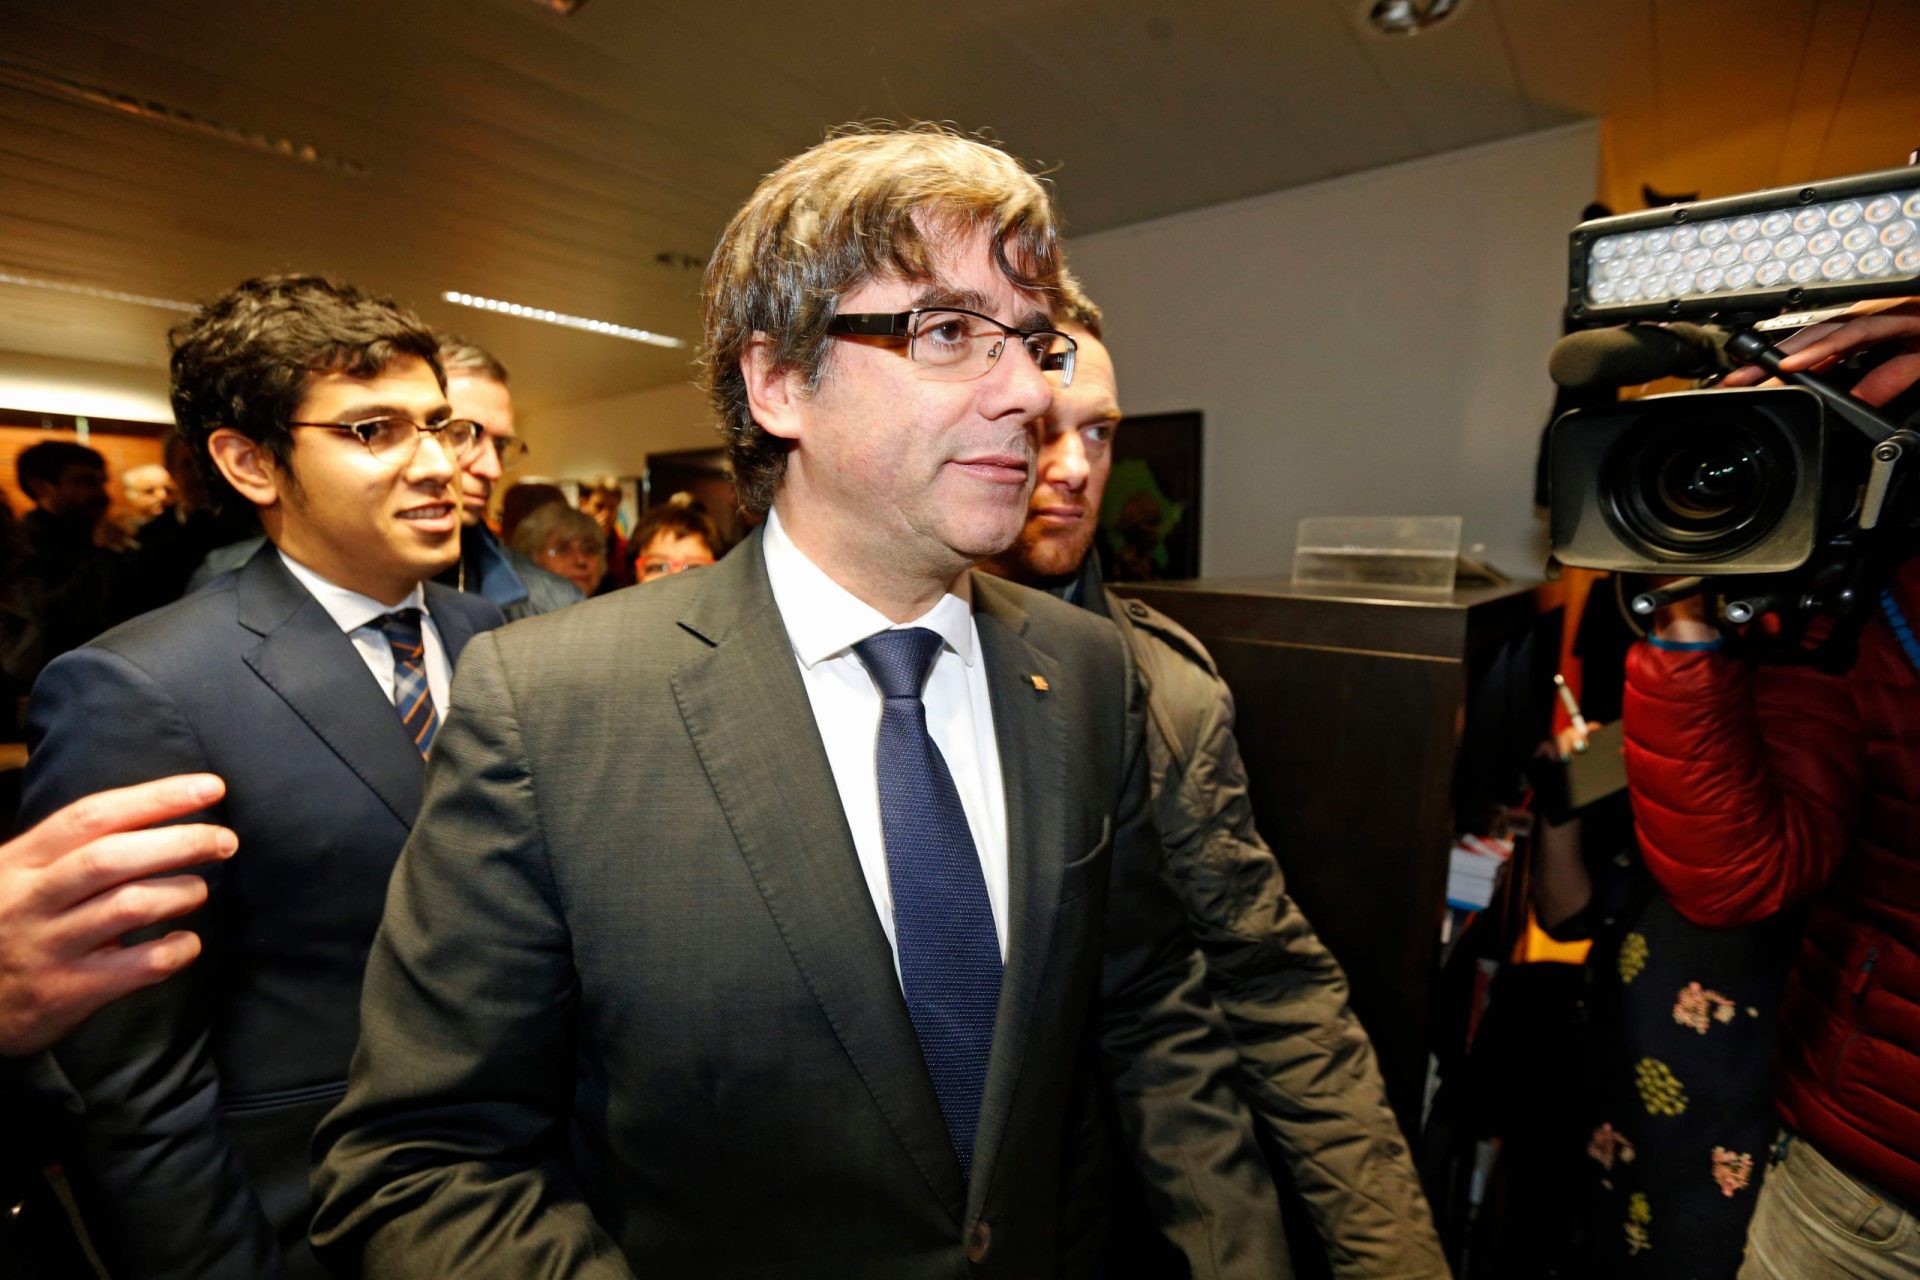 Catalunha. Procuradoria-Geral espanhola pede detenção de Puigdemont